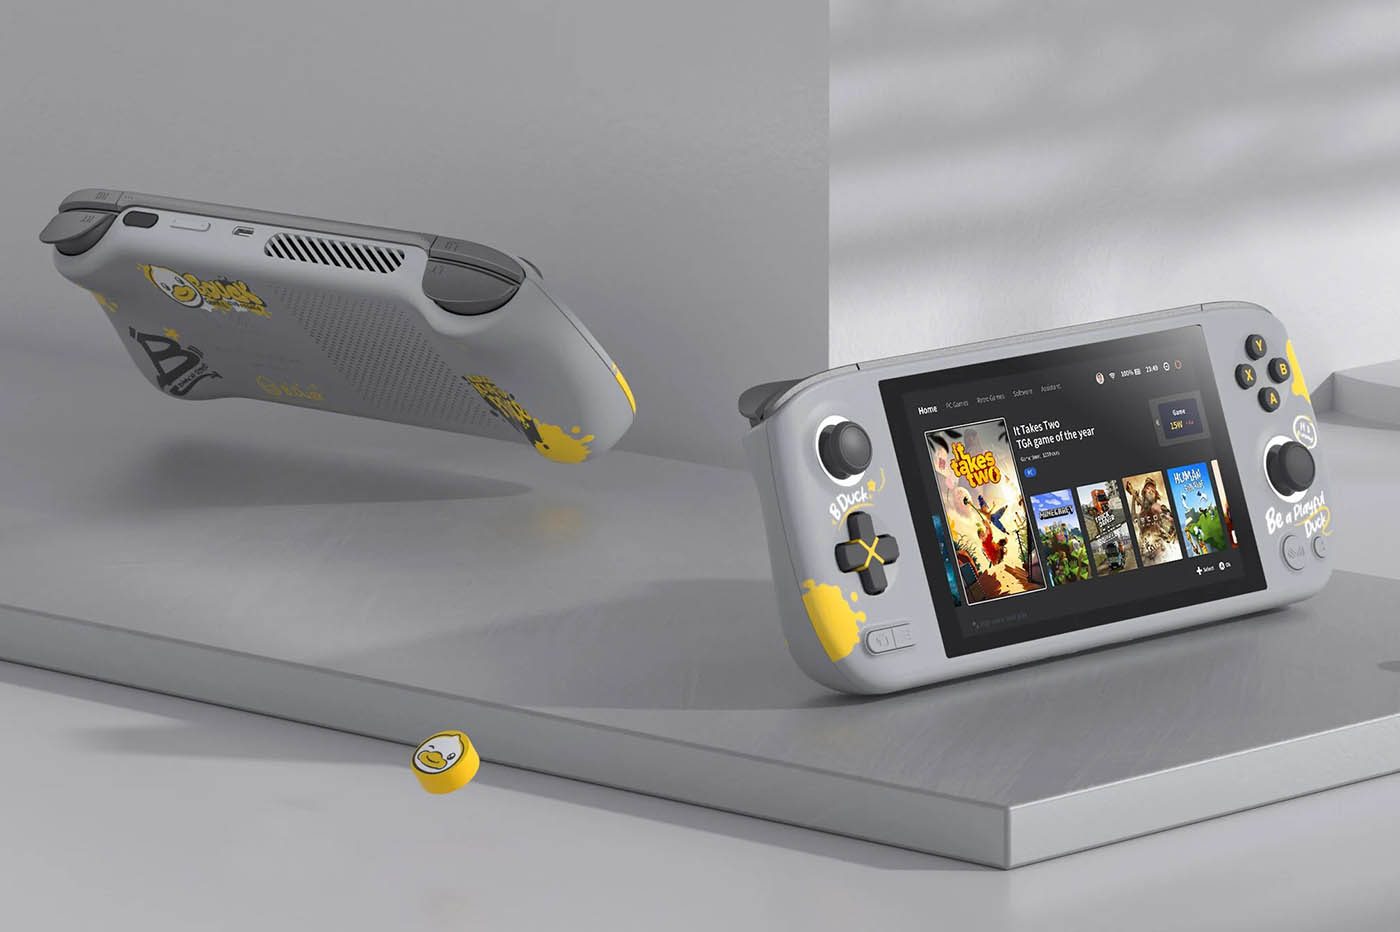 Ce concept de PS5 fusionnée avec la PlayStation Portable laisse rêveur